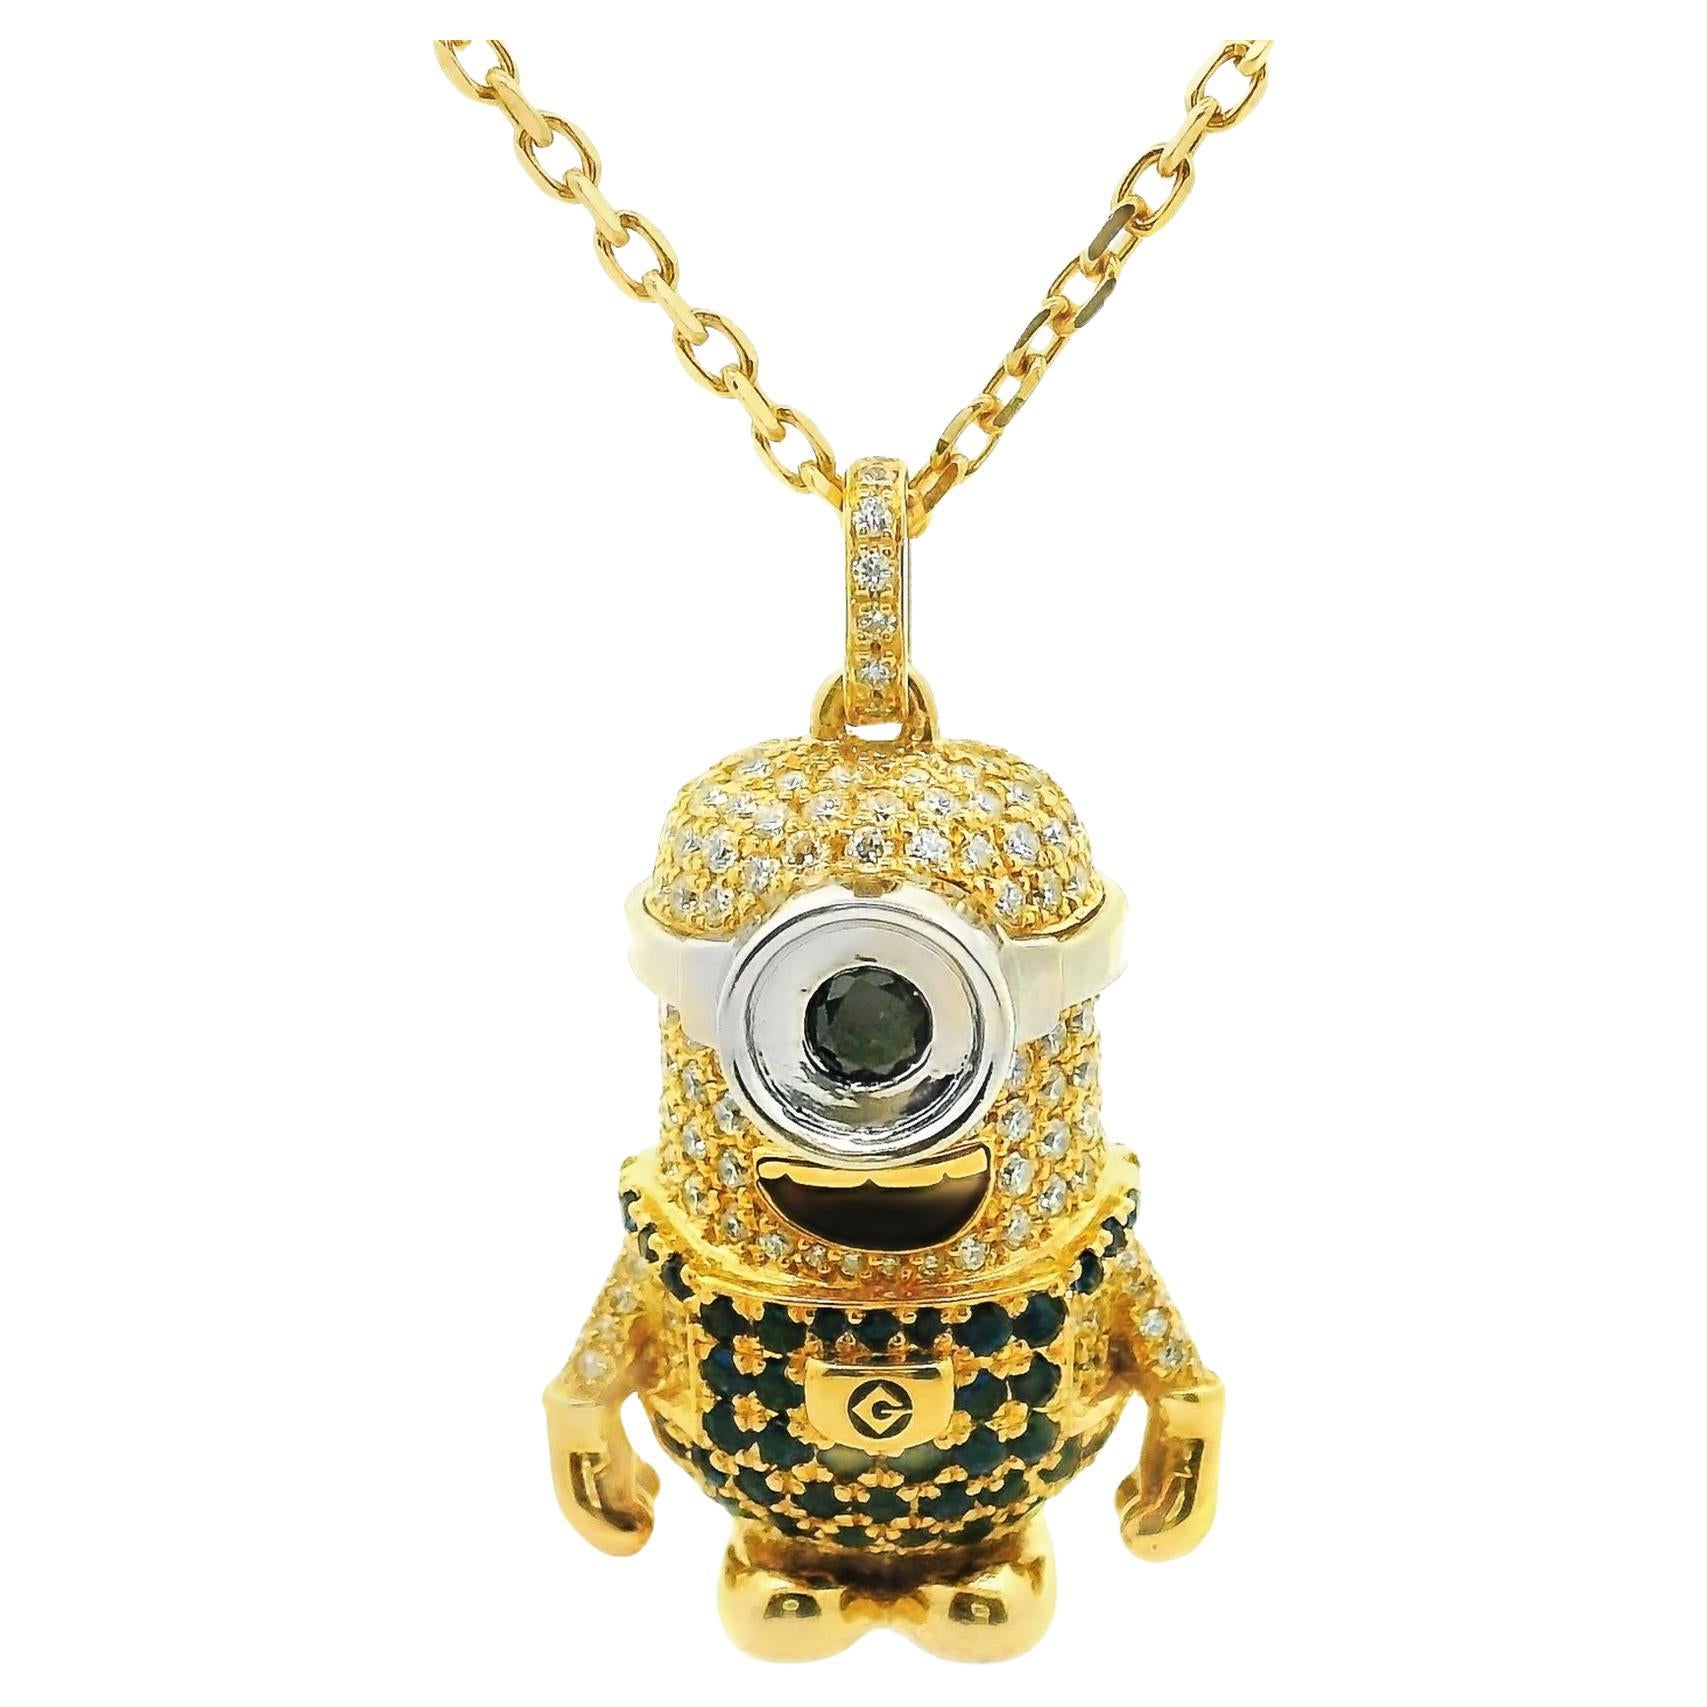 Collier pendentif minion en or jaune 18 carats avec diamants blancs et noirs et saphirs